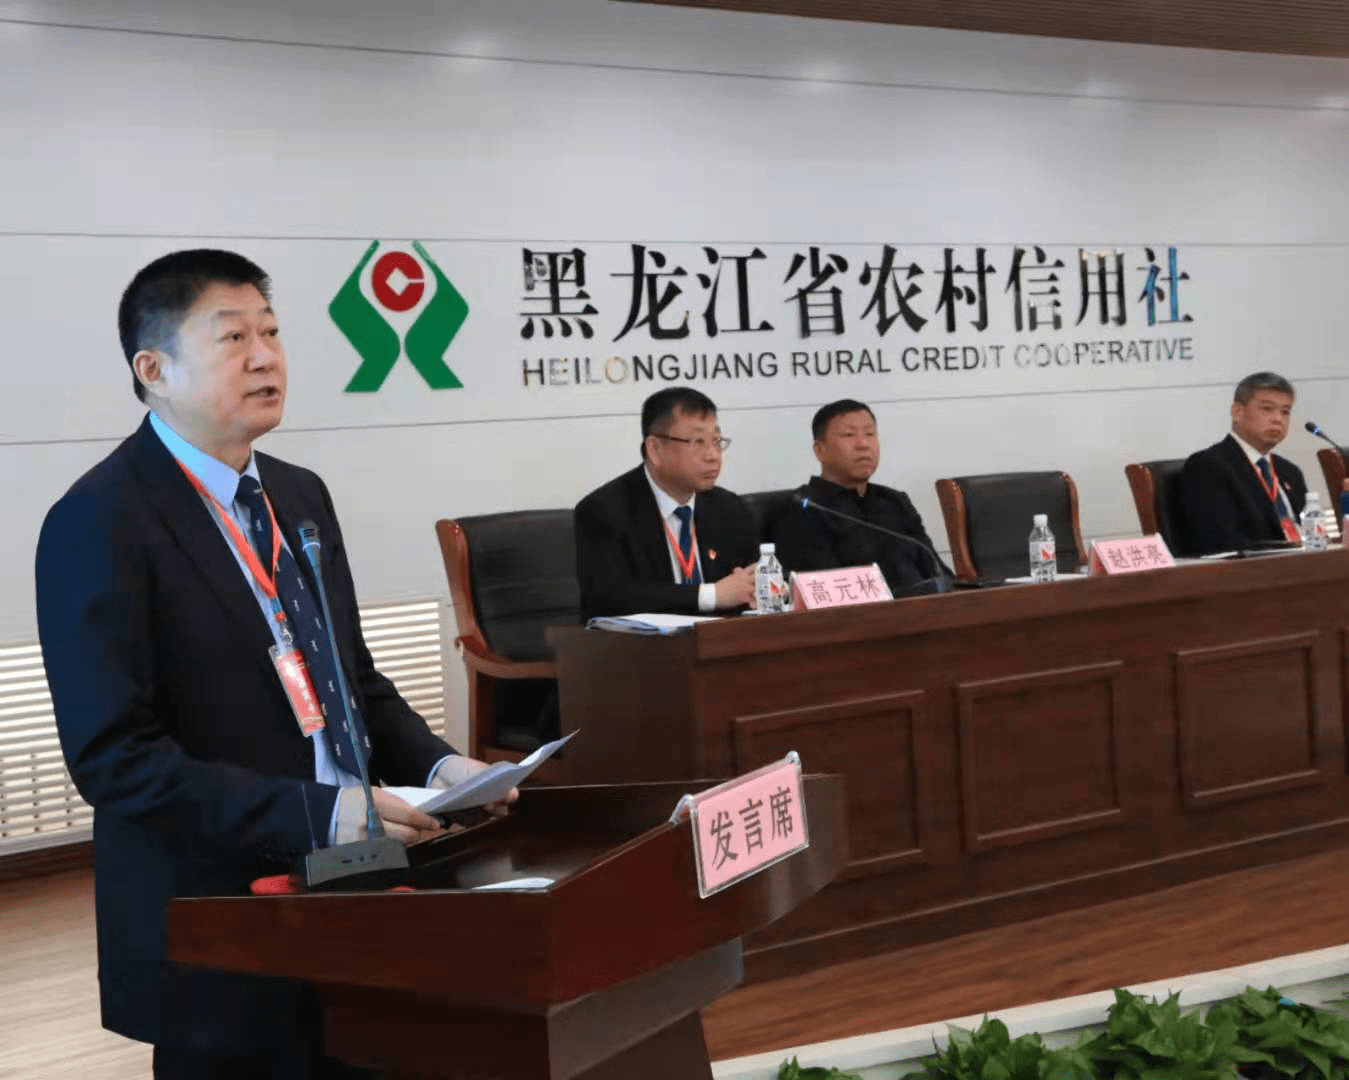 郐晓龙指出,今年是国家十四五开局之年,本次会议对加快推进龙江农业